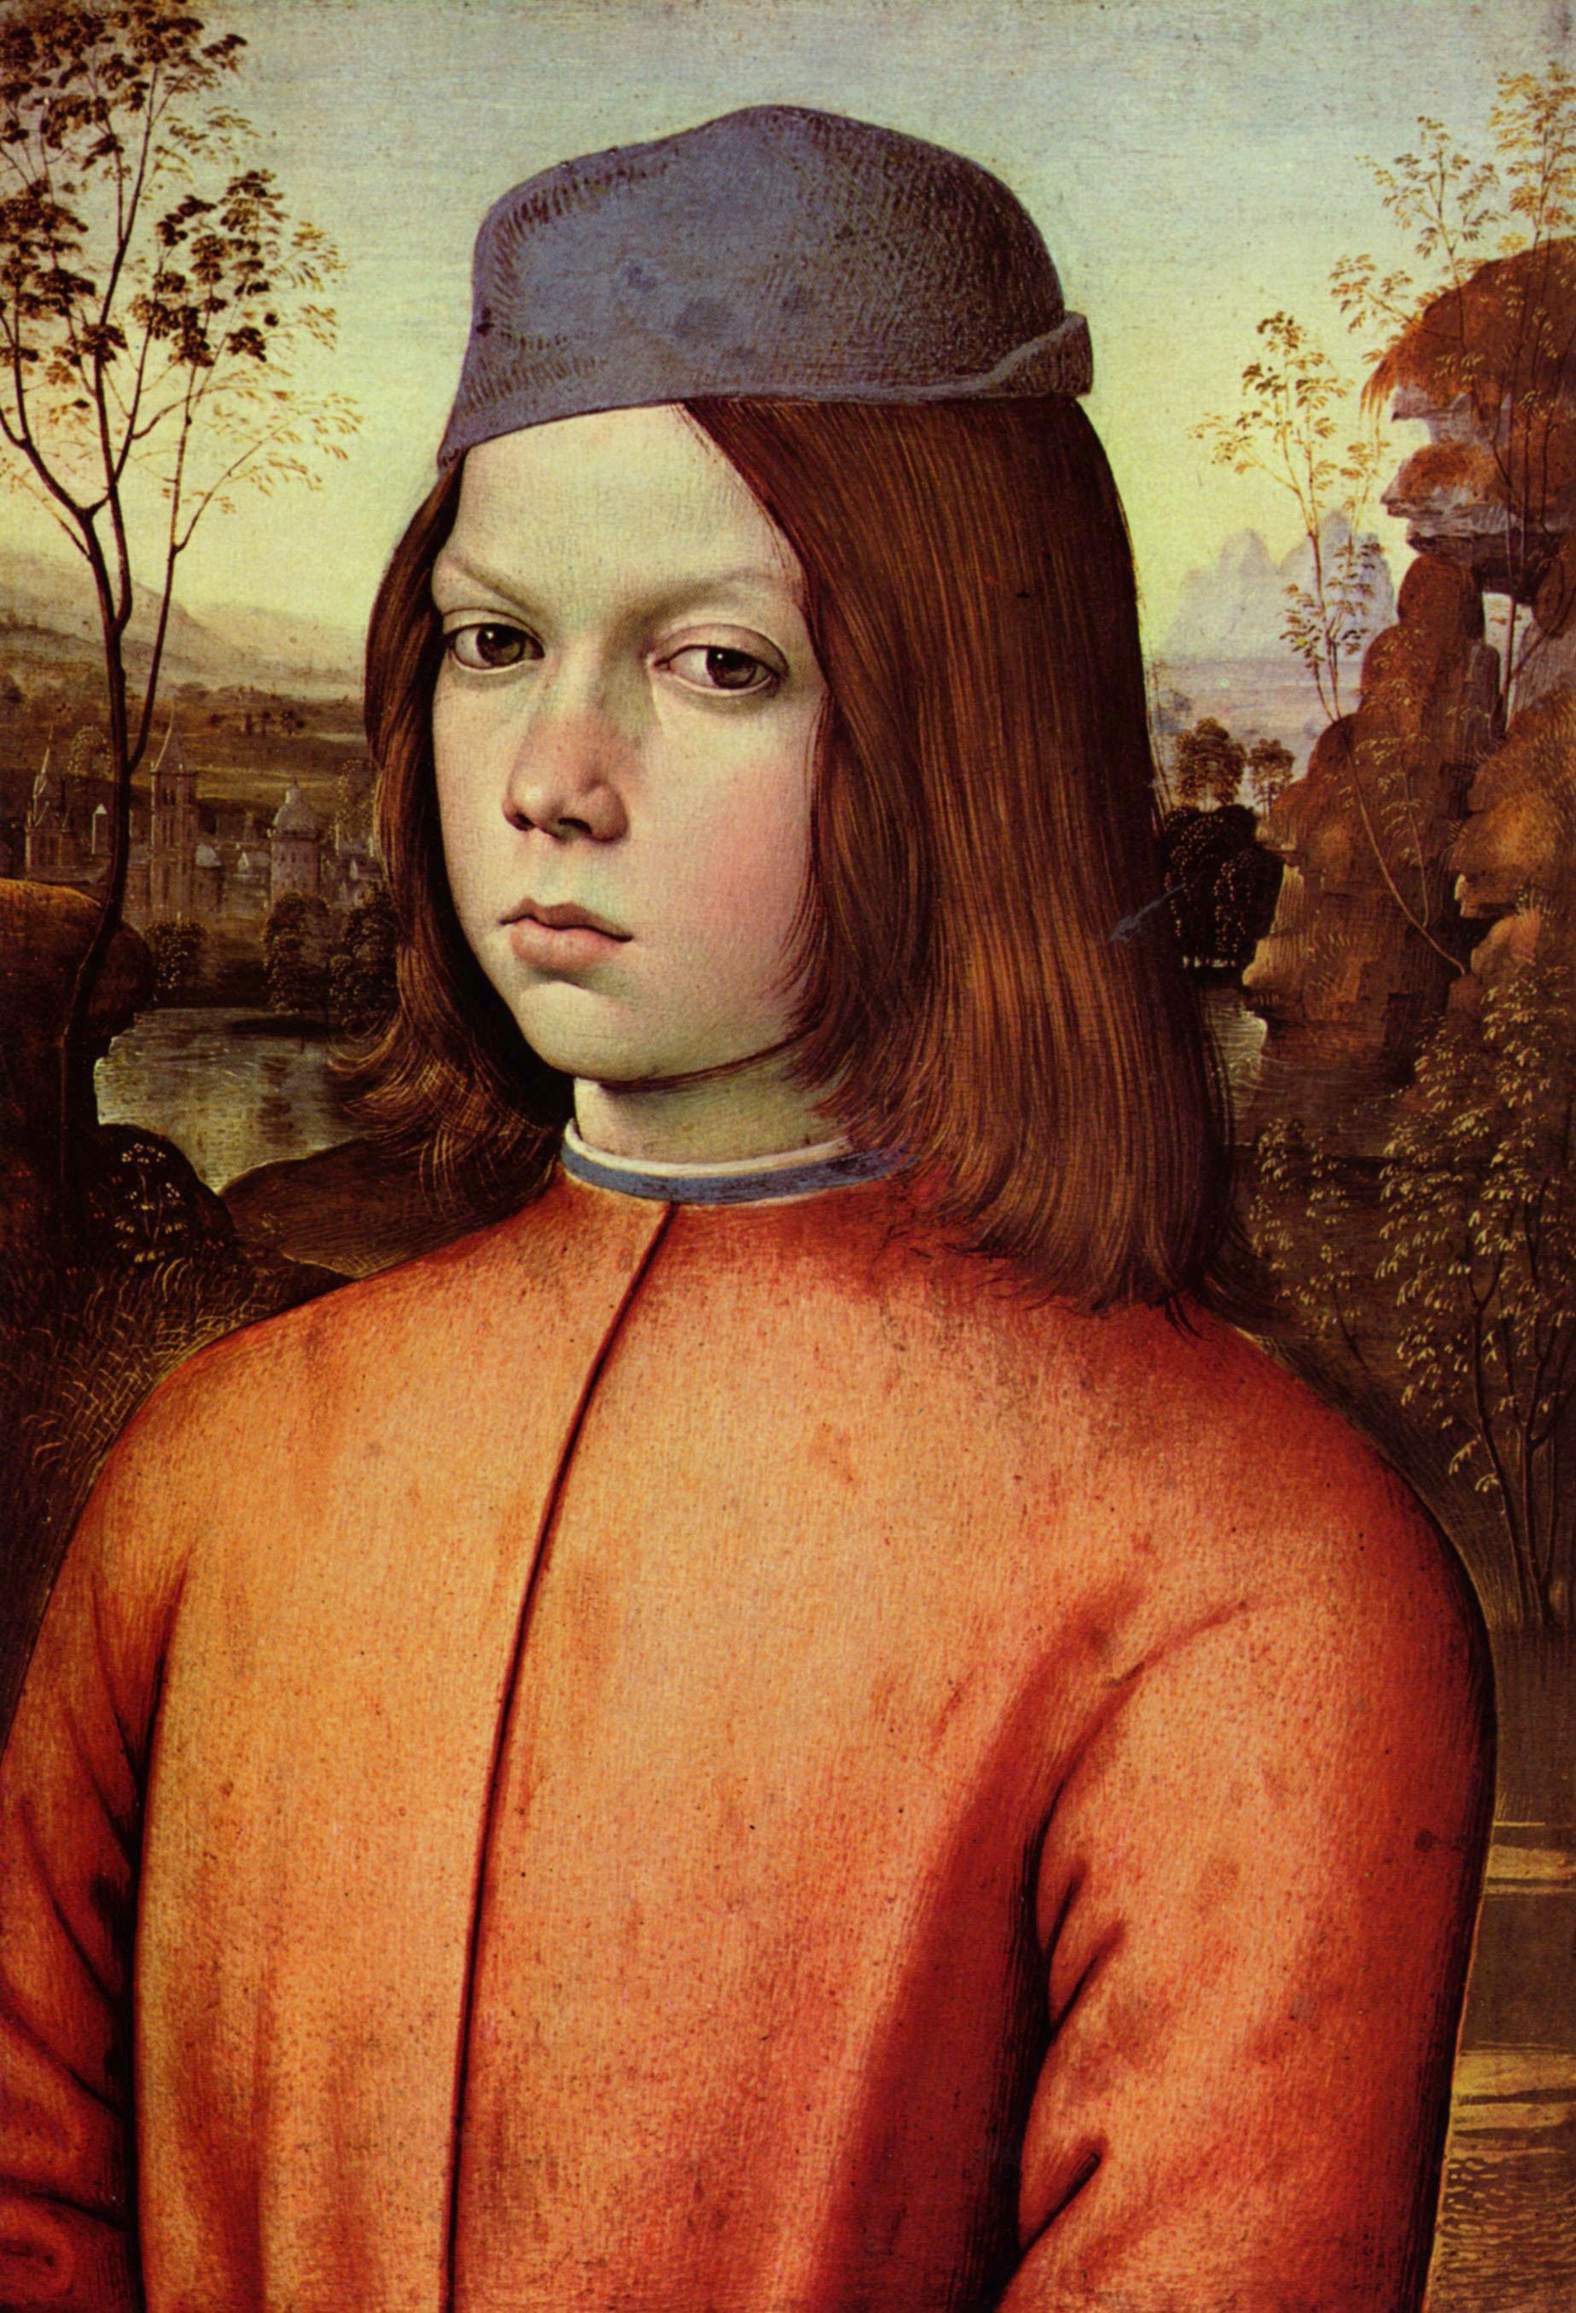 "Портрет мальчика" - итальянский художник Пинтуриккио (около 1454-1513)